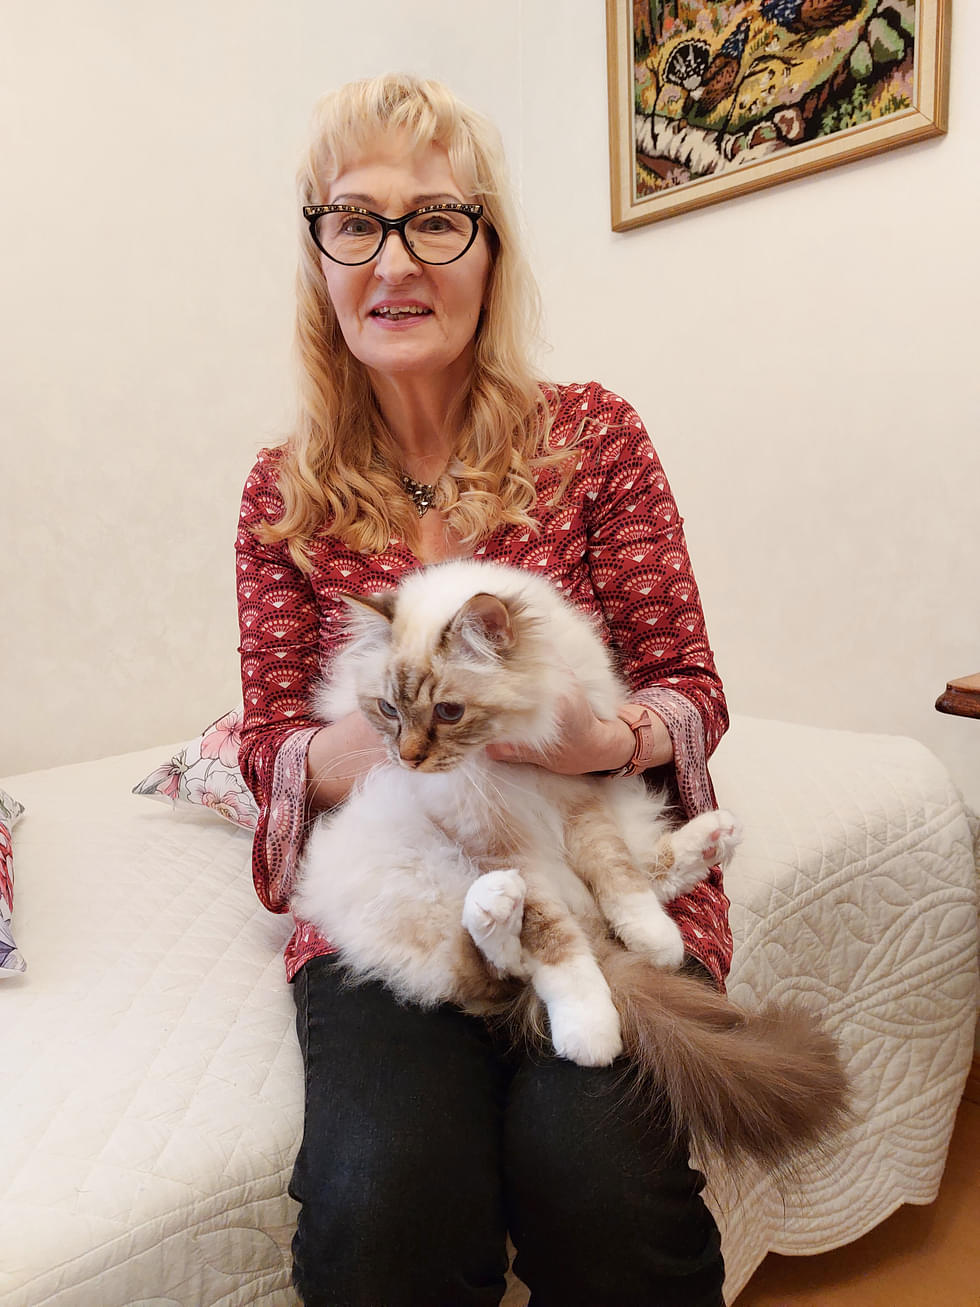 Merja Schiavonen Luna-kissa on pian kolmevuotias pyhä birma. ”Se on suloinen terapianappulani”, Schiavone sanoo.